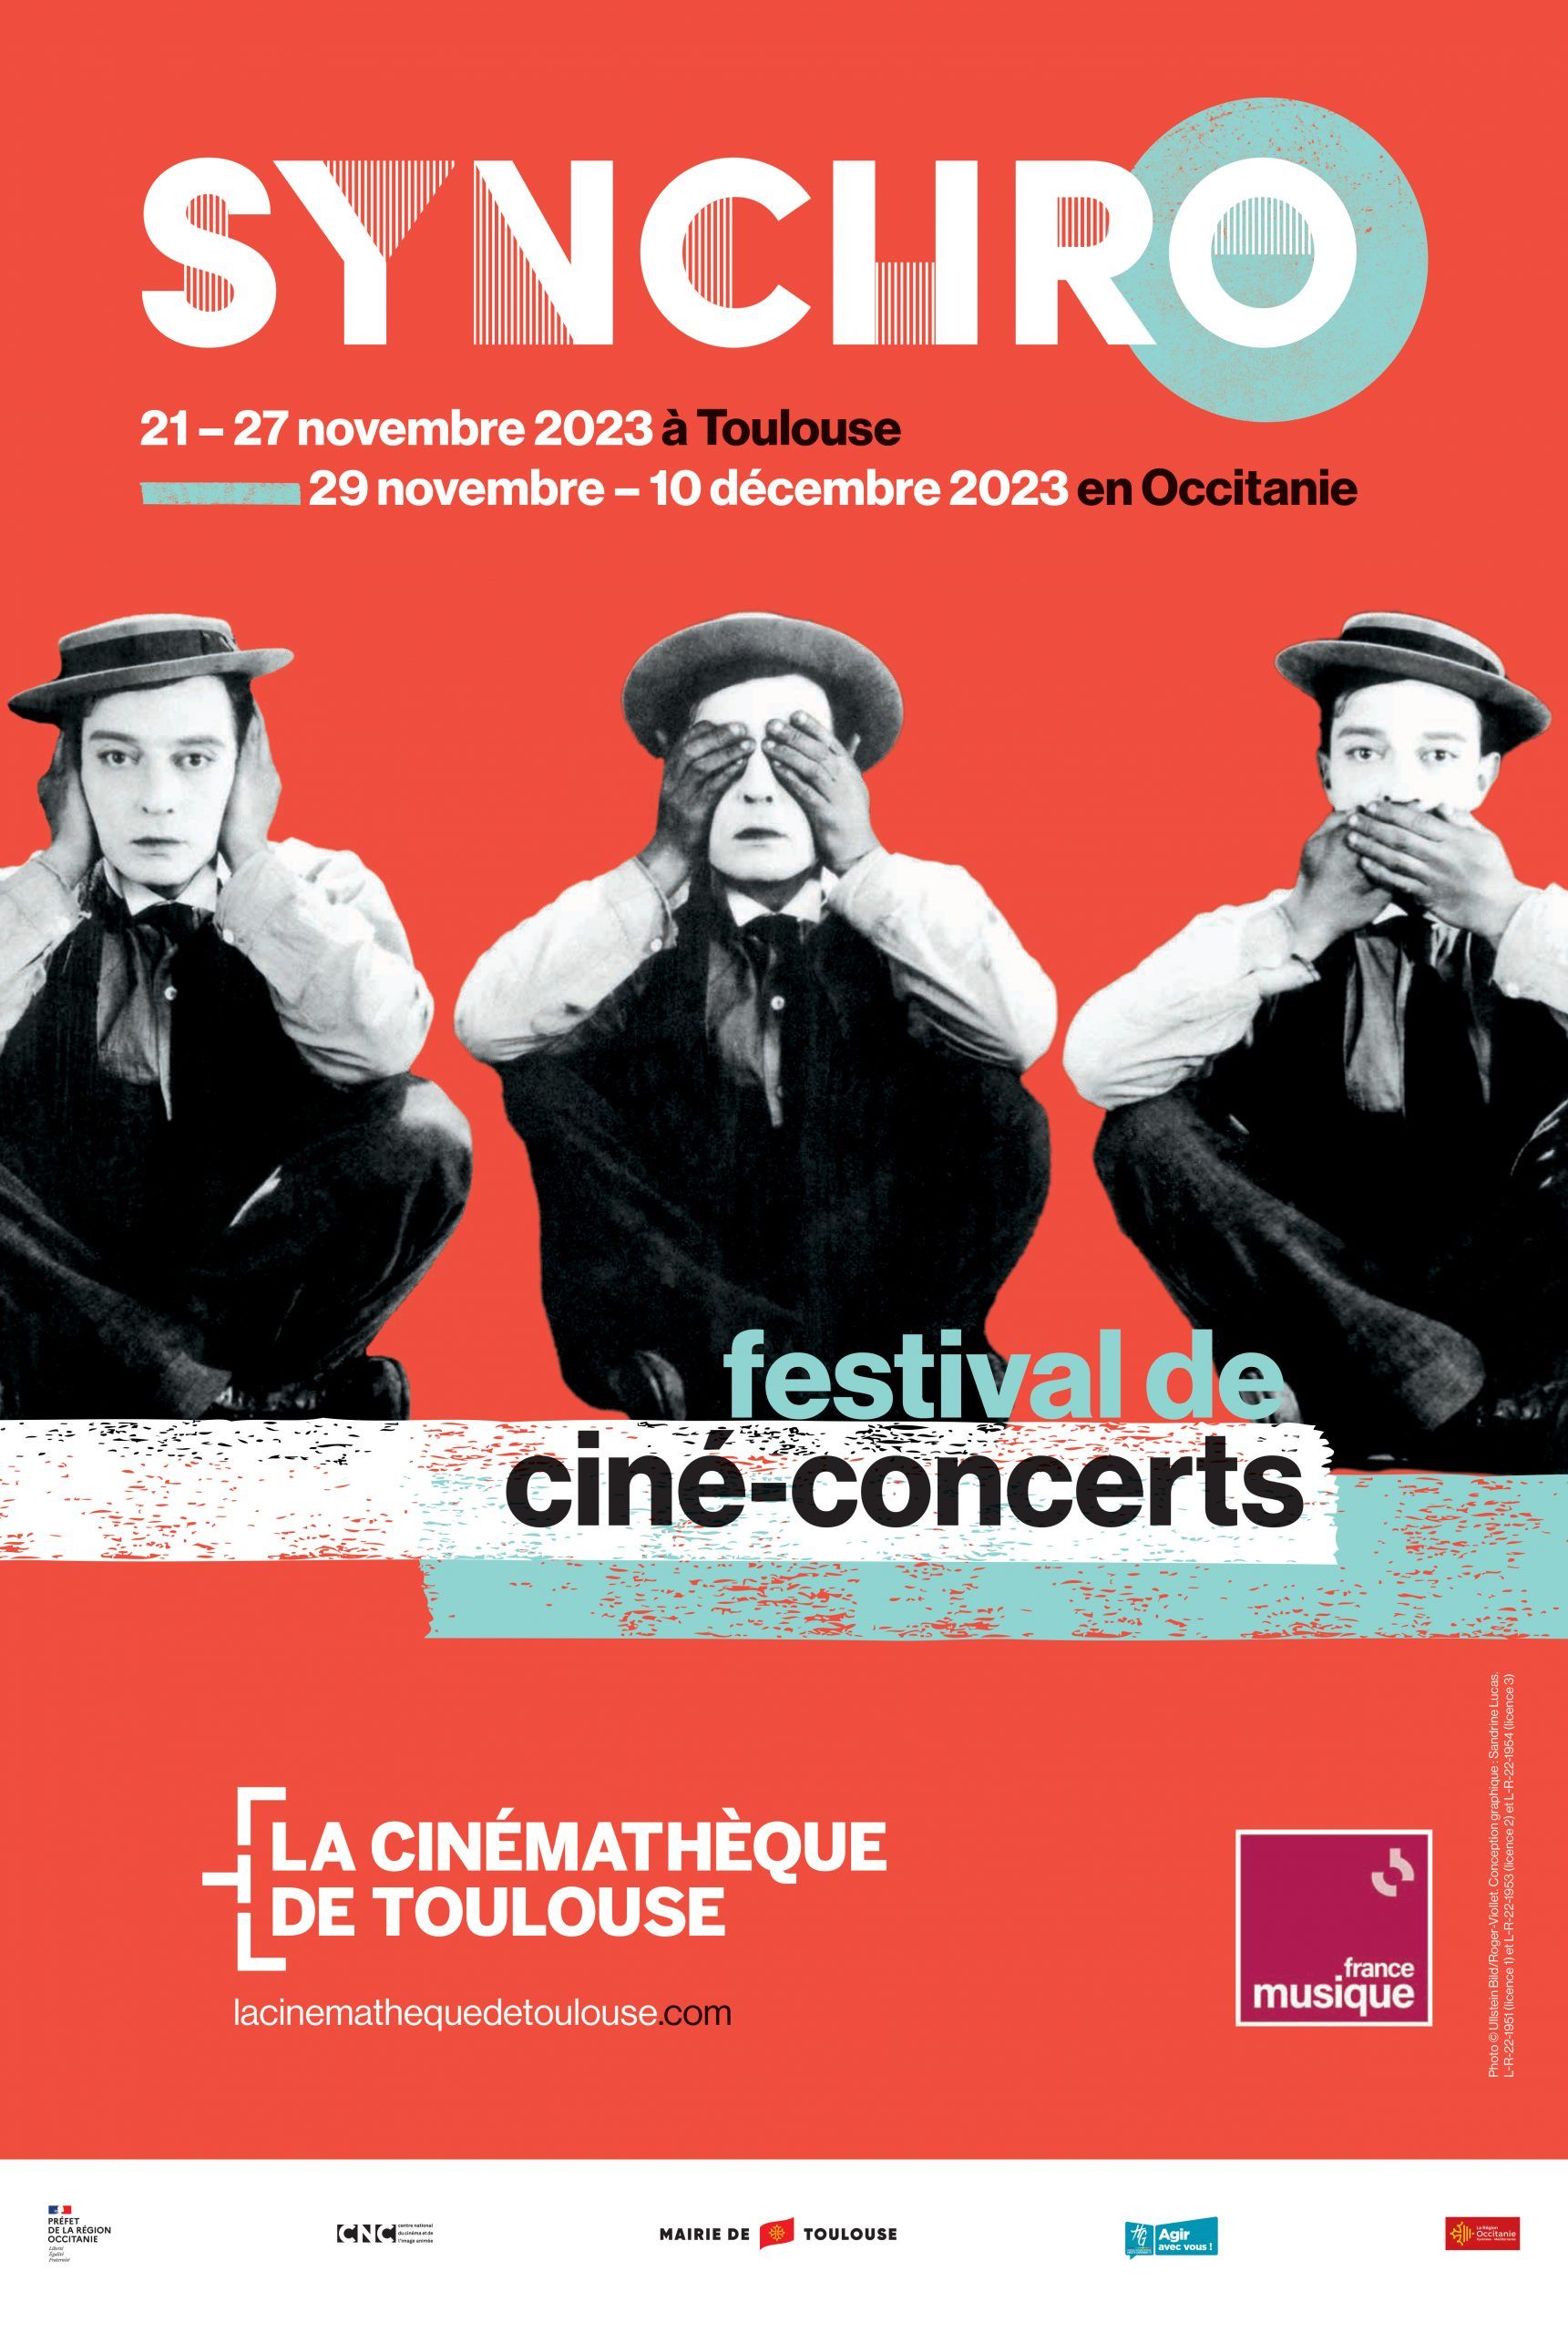 Cinémathèque de Toulouse - Festival Synchro